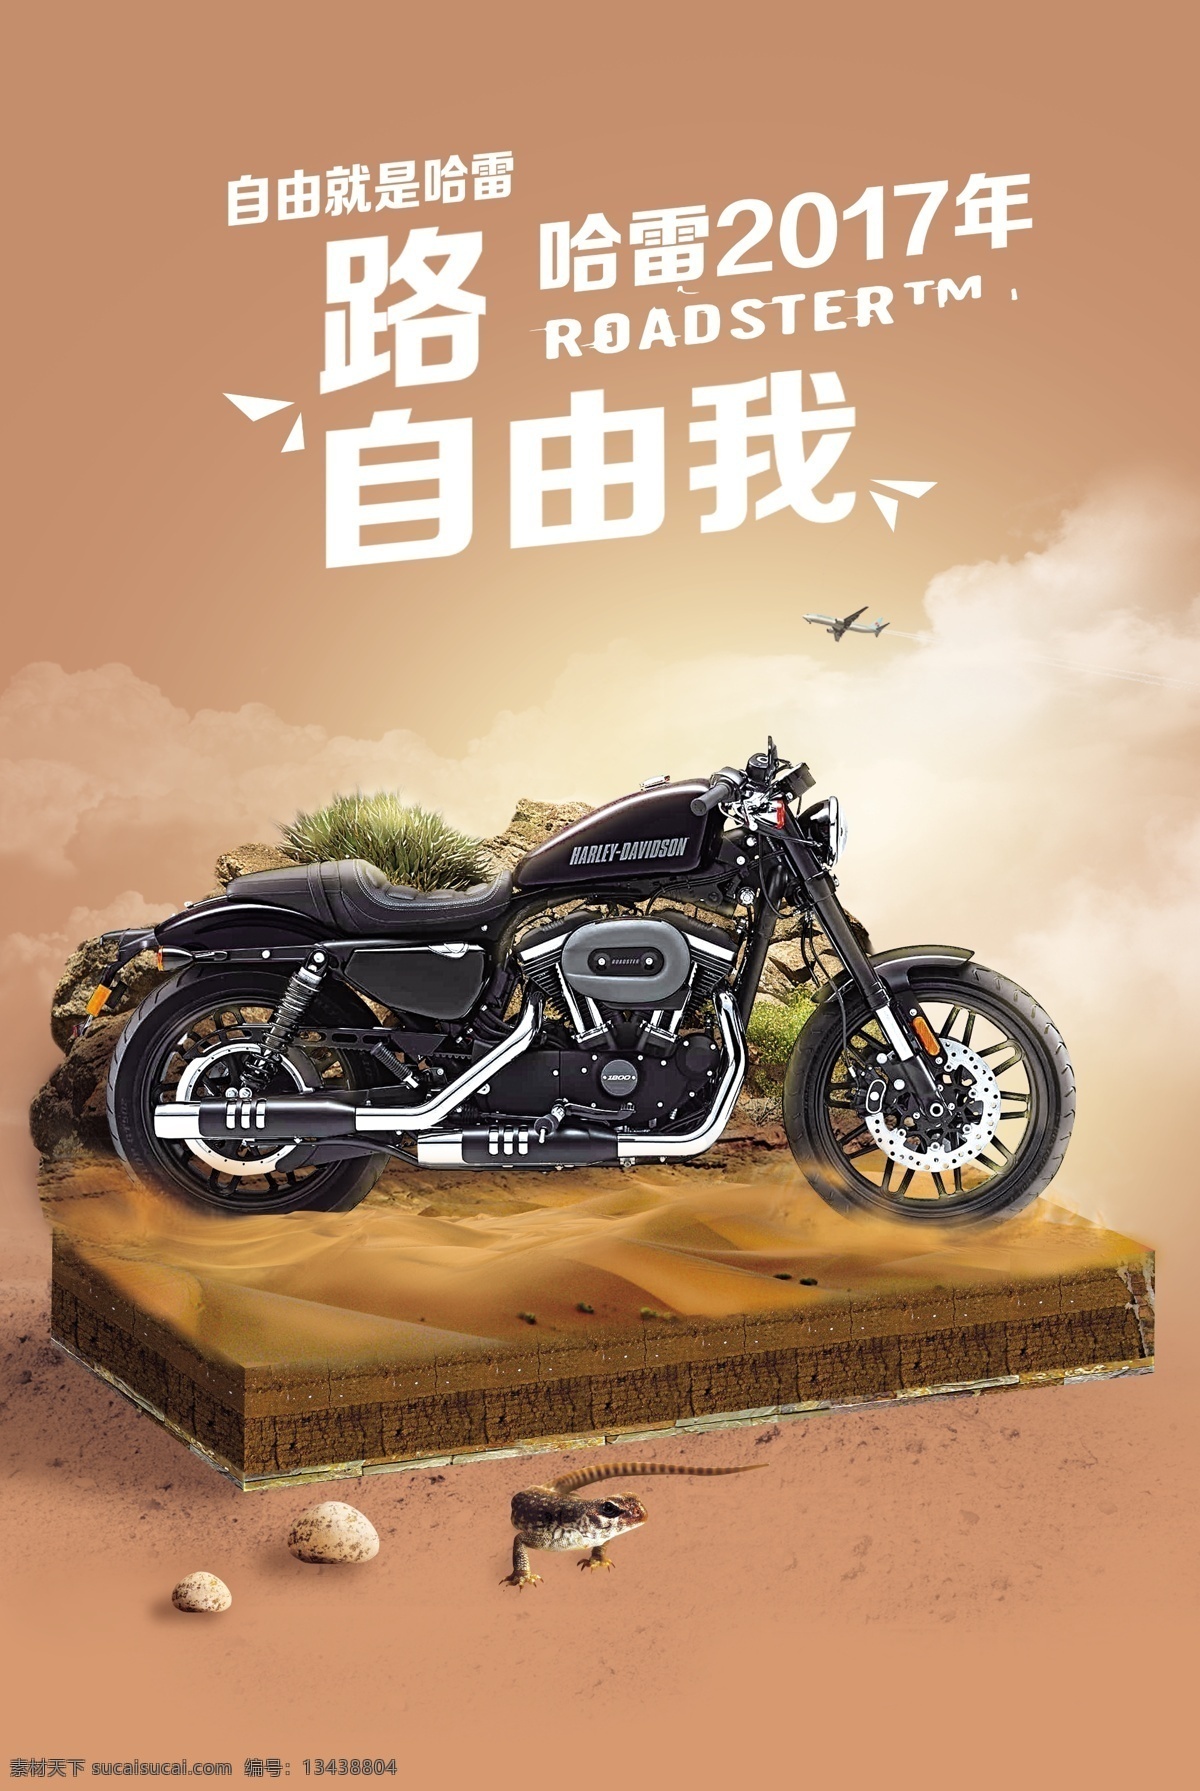 哈雷 戴维森 沙漠 宣传海报 摩托车 商业海报 合成 哈雷戴维森 小景合成 飞烟